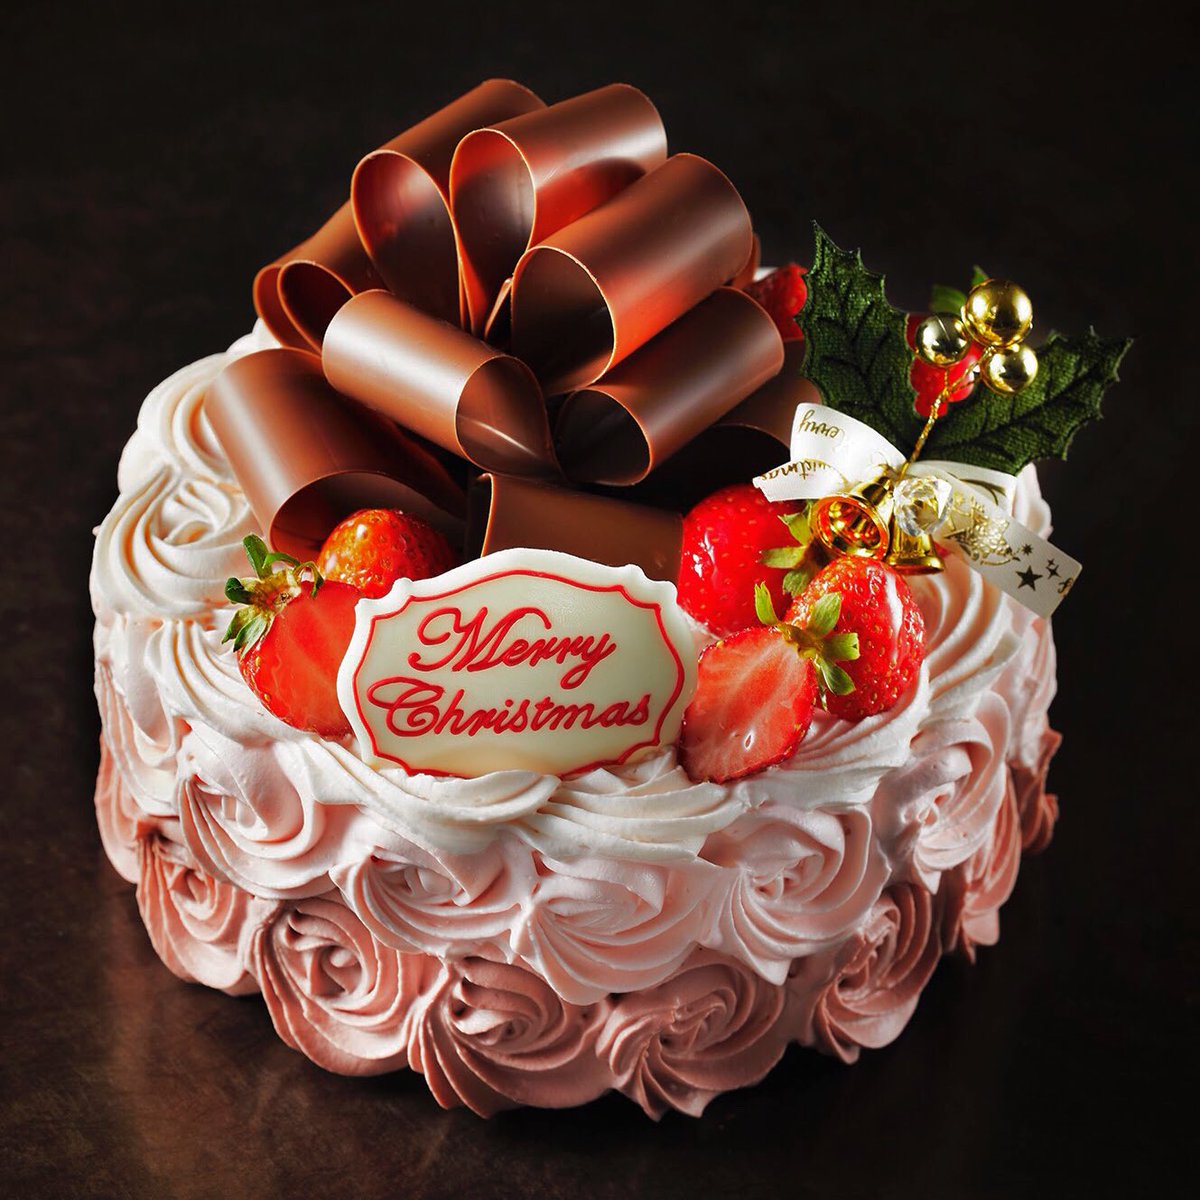 アトリエ アニバーサリー 数量限定 予約限定 クリスマスケーキ アトリエアニバーサリー プレシャスクリスマス 16cm 税込7 0円 バラのようなデコレーションに チョコレートのリボンをのせて とても豪華なショートケーキです 販売店舗